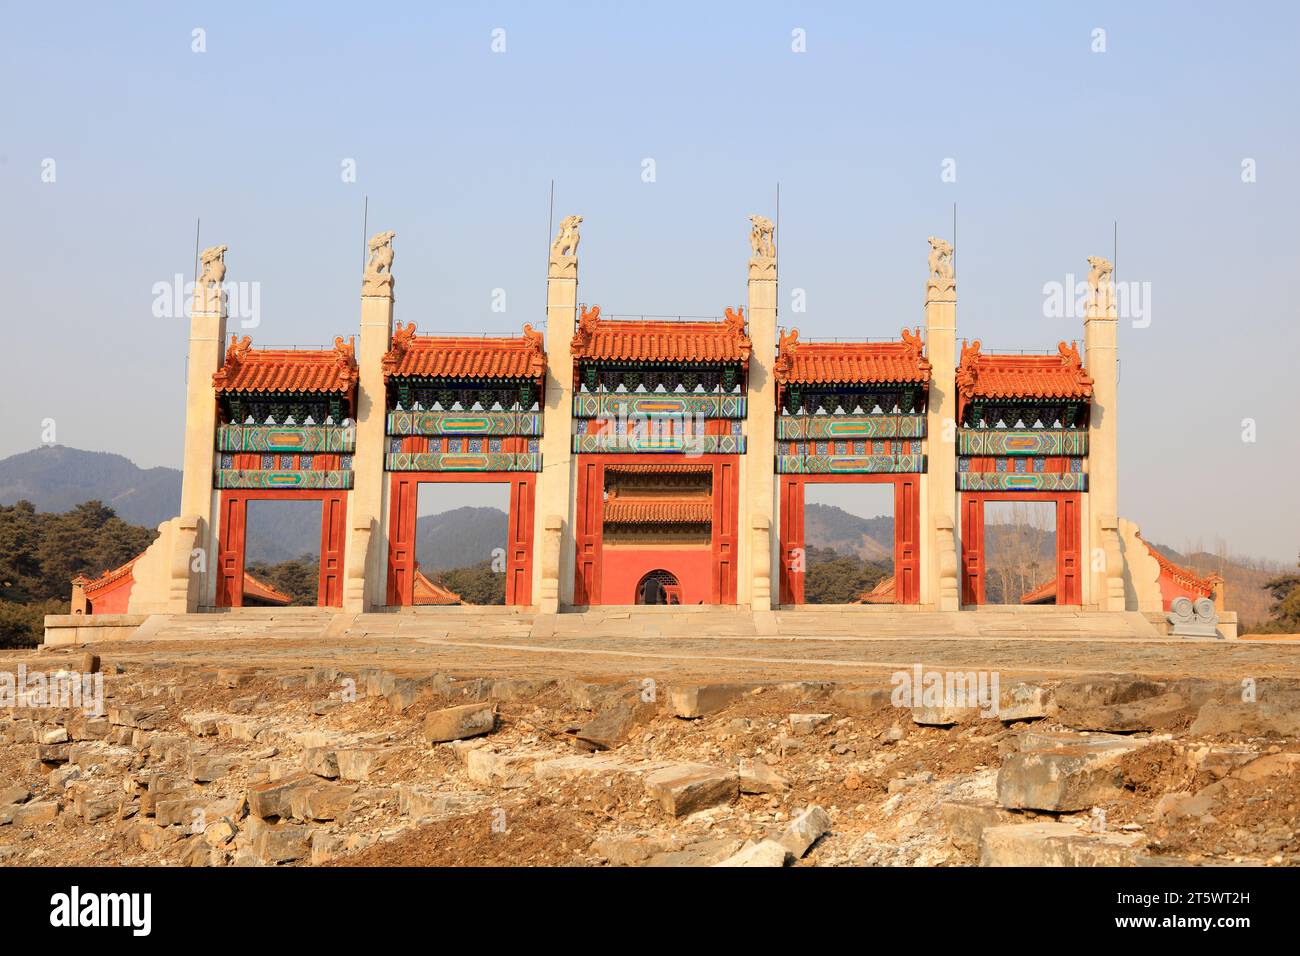 Antica architettura tradizionale cinese Foto Stock